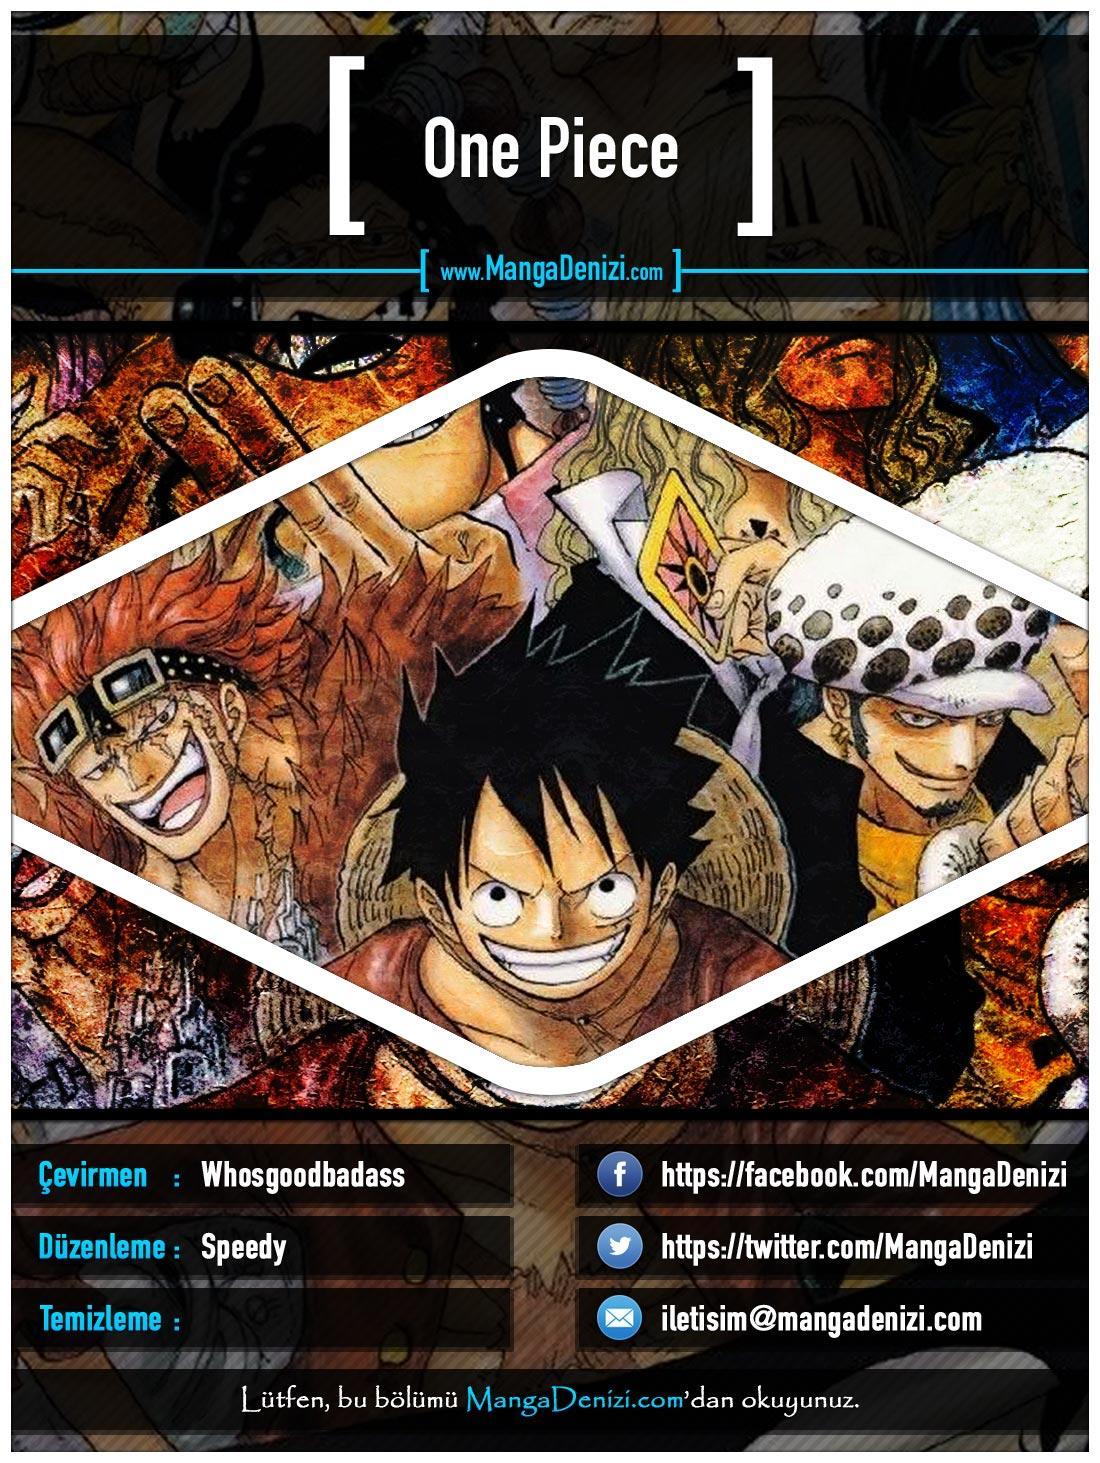 One Piece [Renkli] mangasının 0495 bölümünün 1. sayfasını okuyorsunuz.